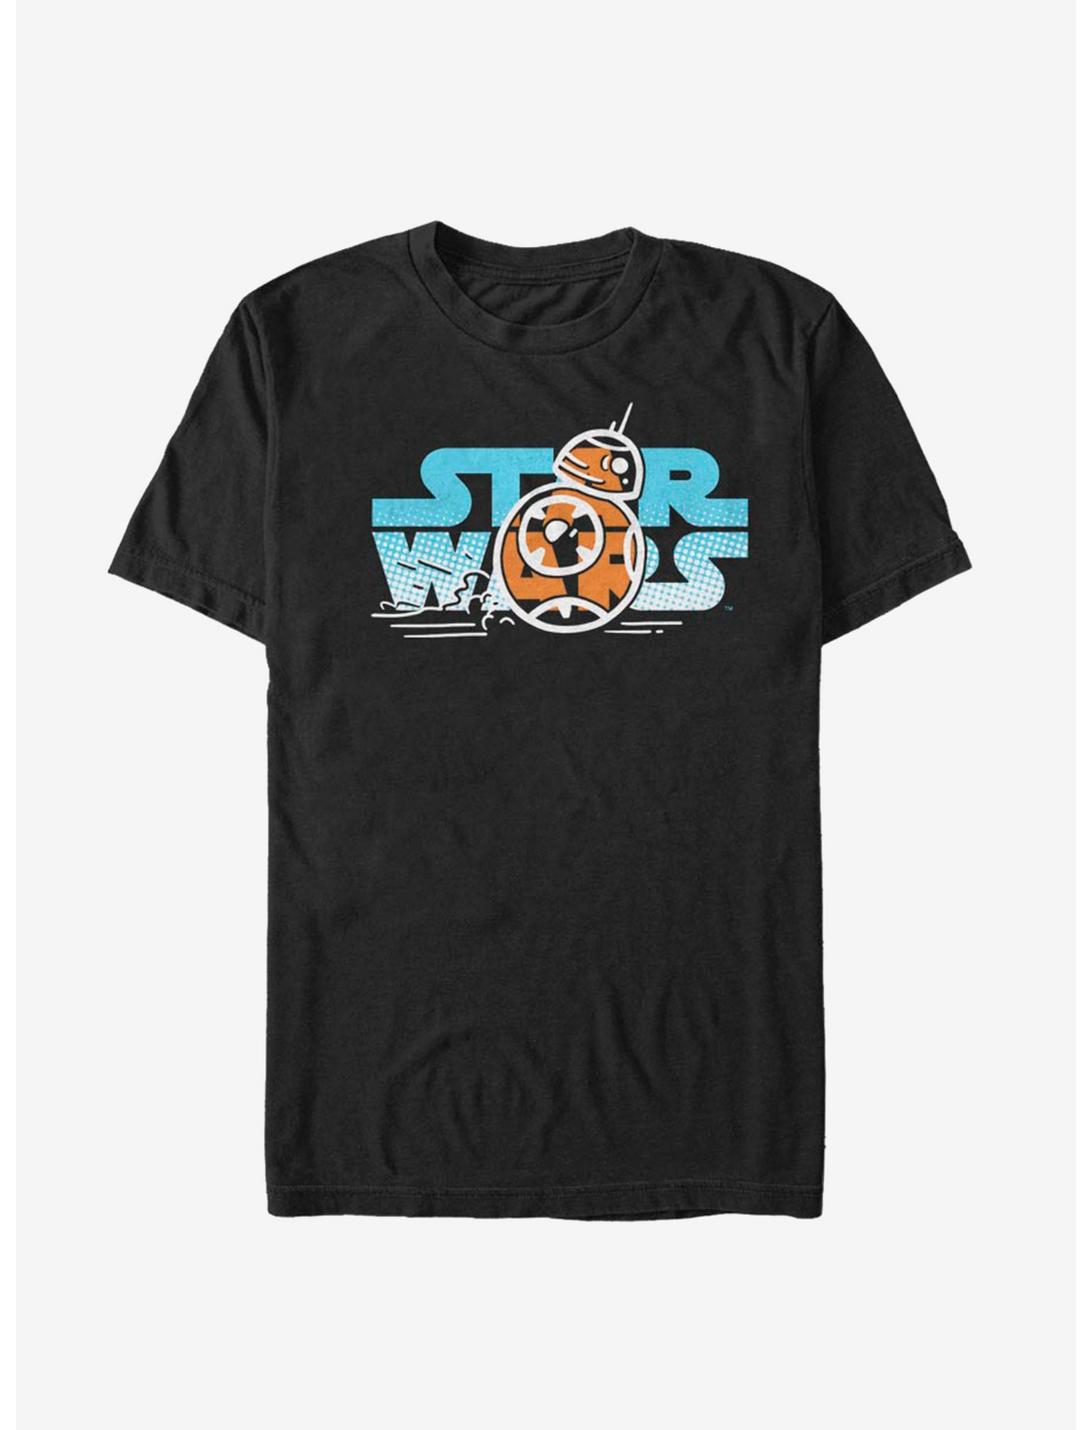 Star Wars Episode IX The Rise Of Skywalker BB-8 Foil T-Shirt, BLACK, hi-res